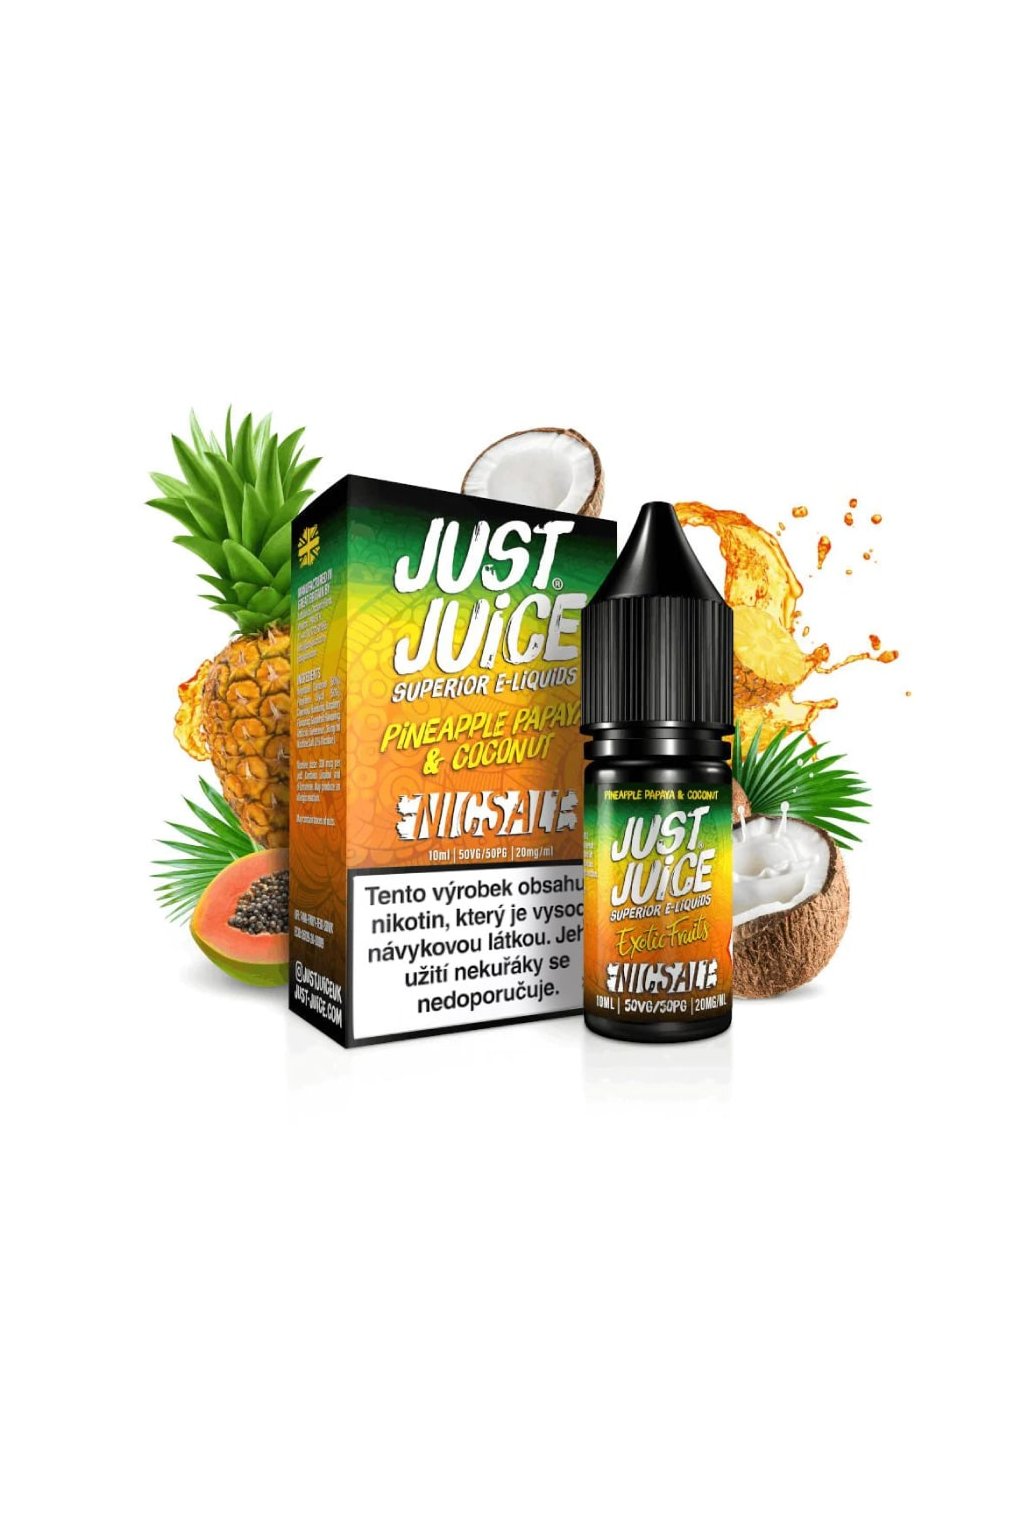 Just Juice salt Pineapple Papaya Coconut e liquid min